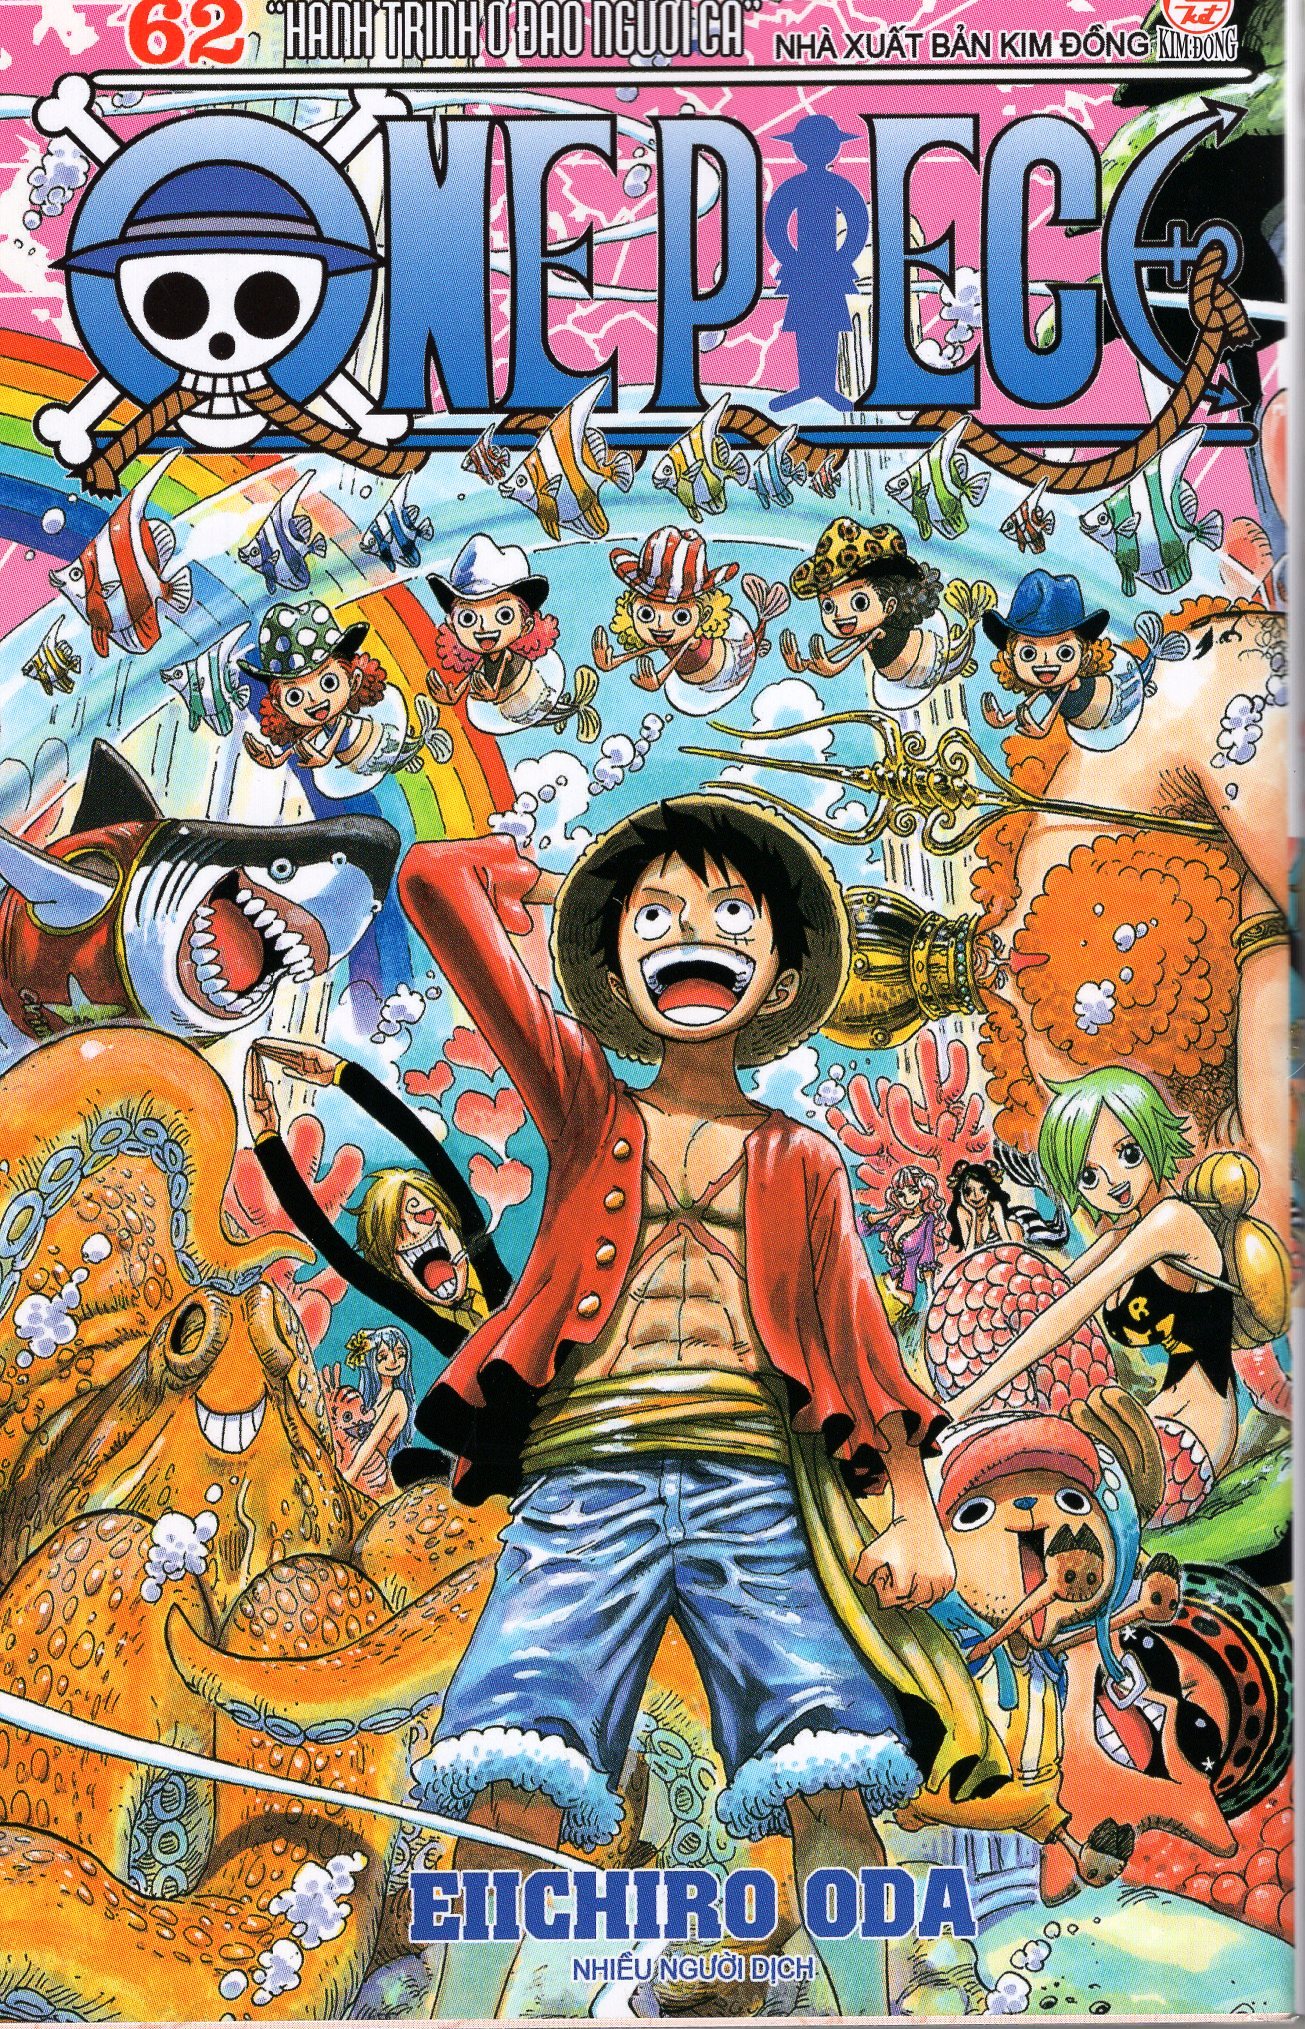 Mua One Piece - Tập 62 | Tiki